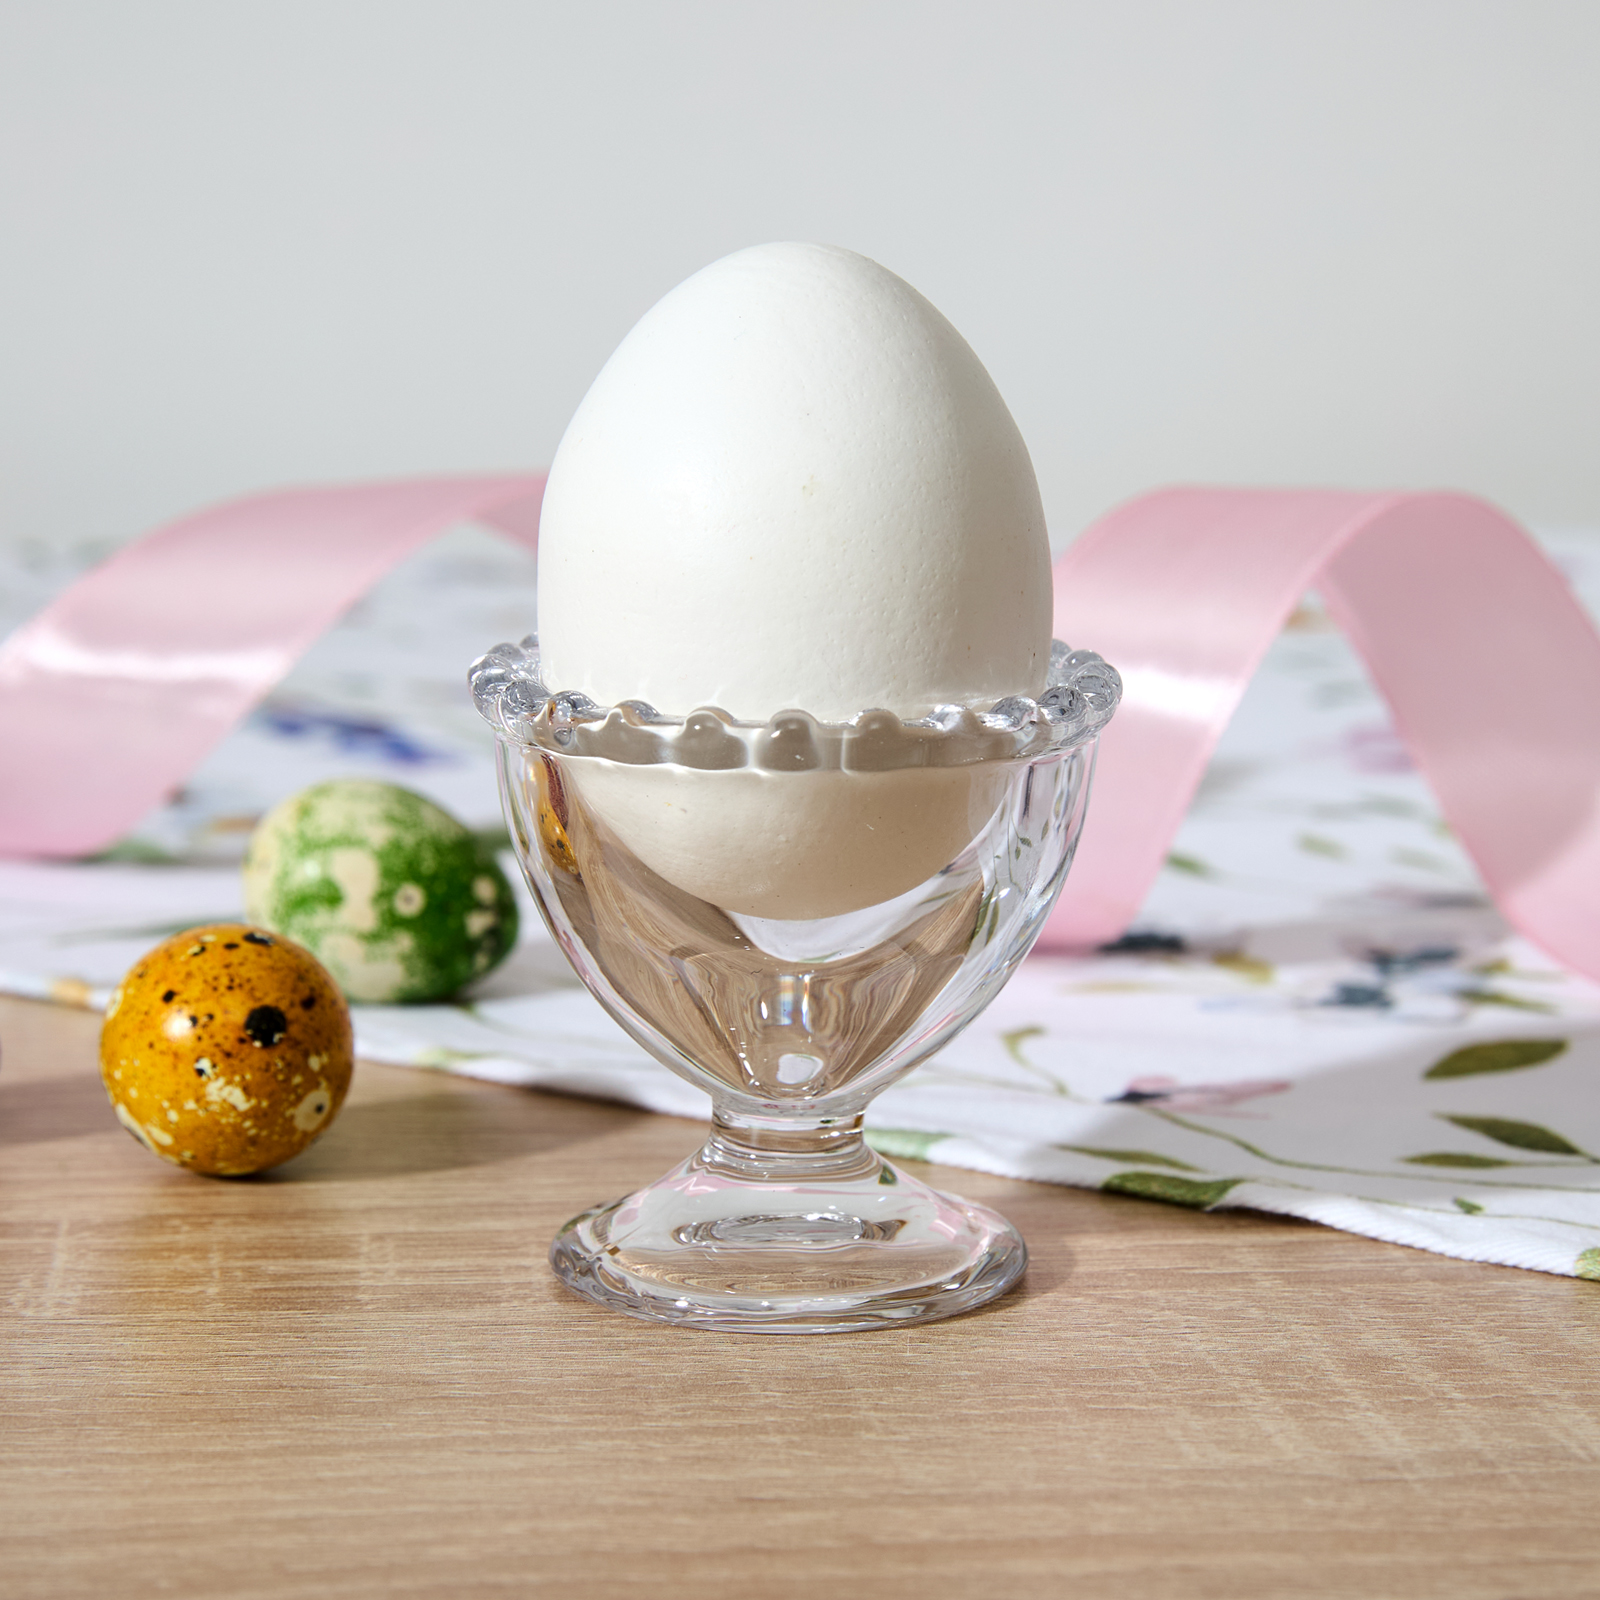 Подставка под яйцо Buona Pasqua II яйцо из пенопласта 9 см